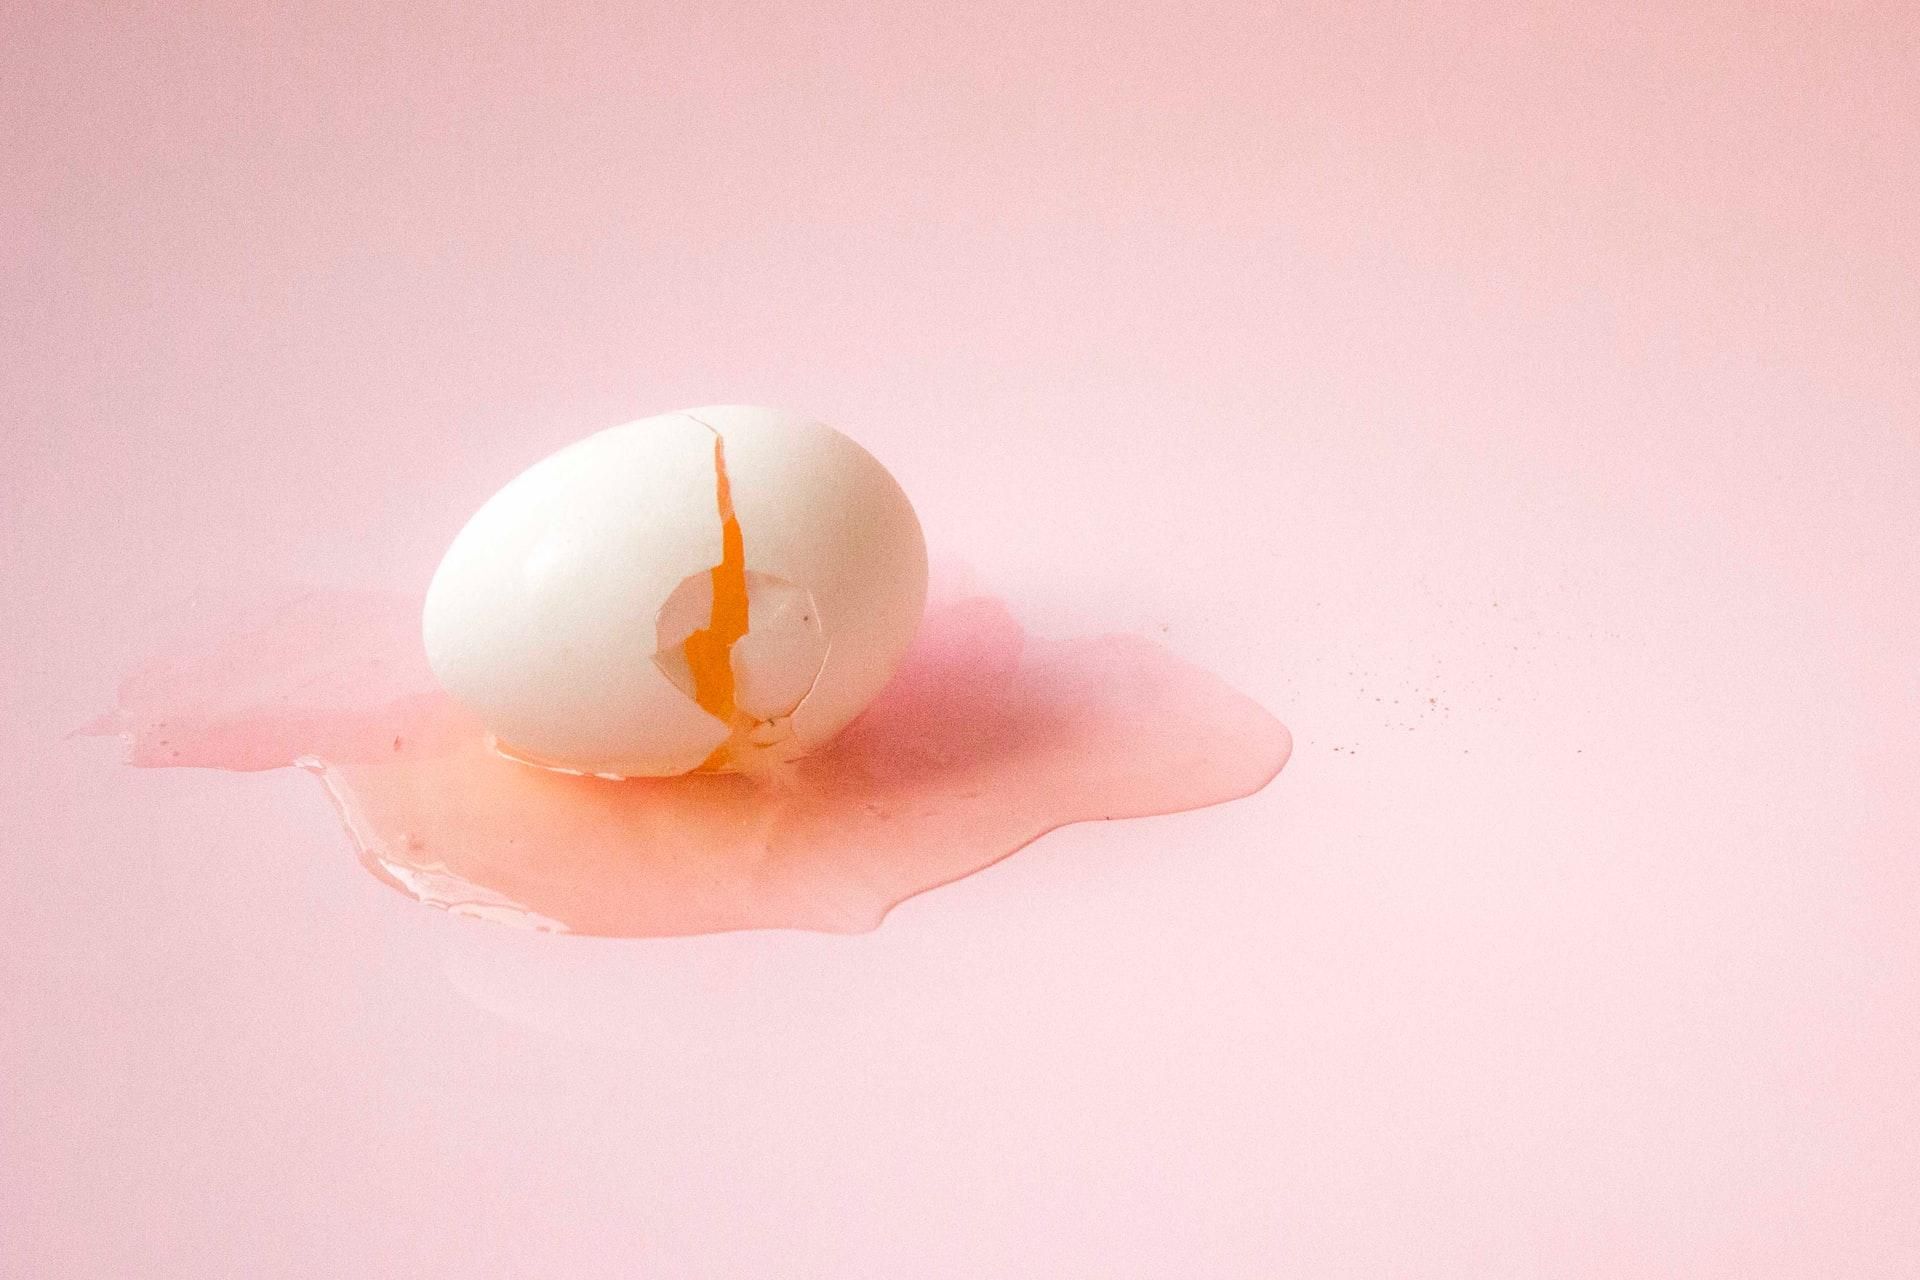 Що може трапитися з мозком при ударах: експеримент з яйцем – фото